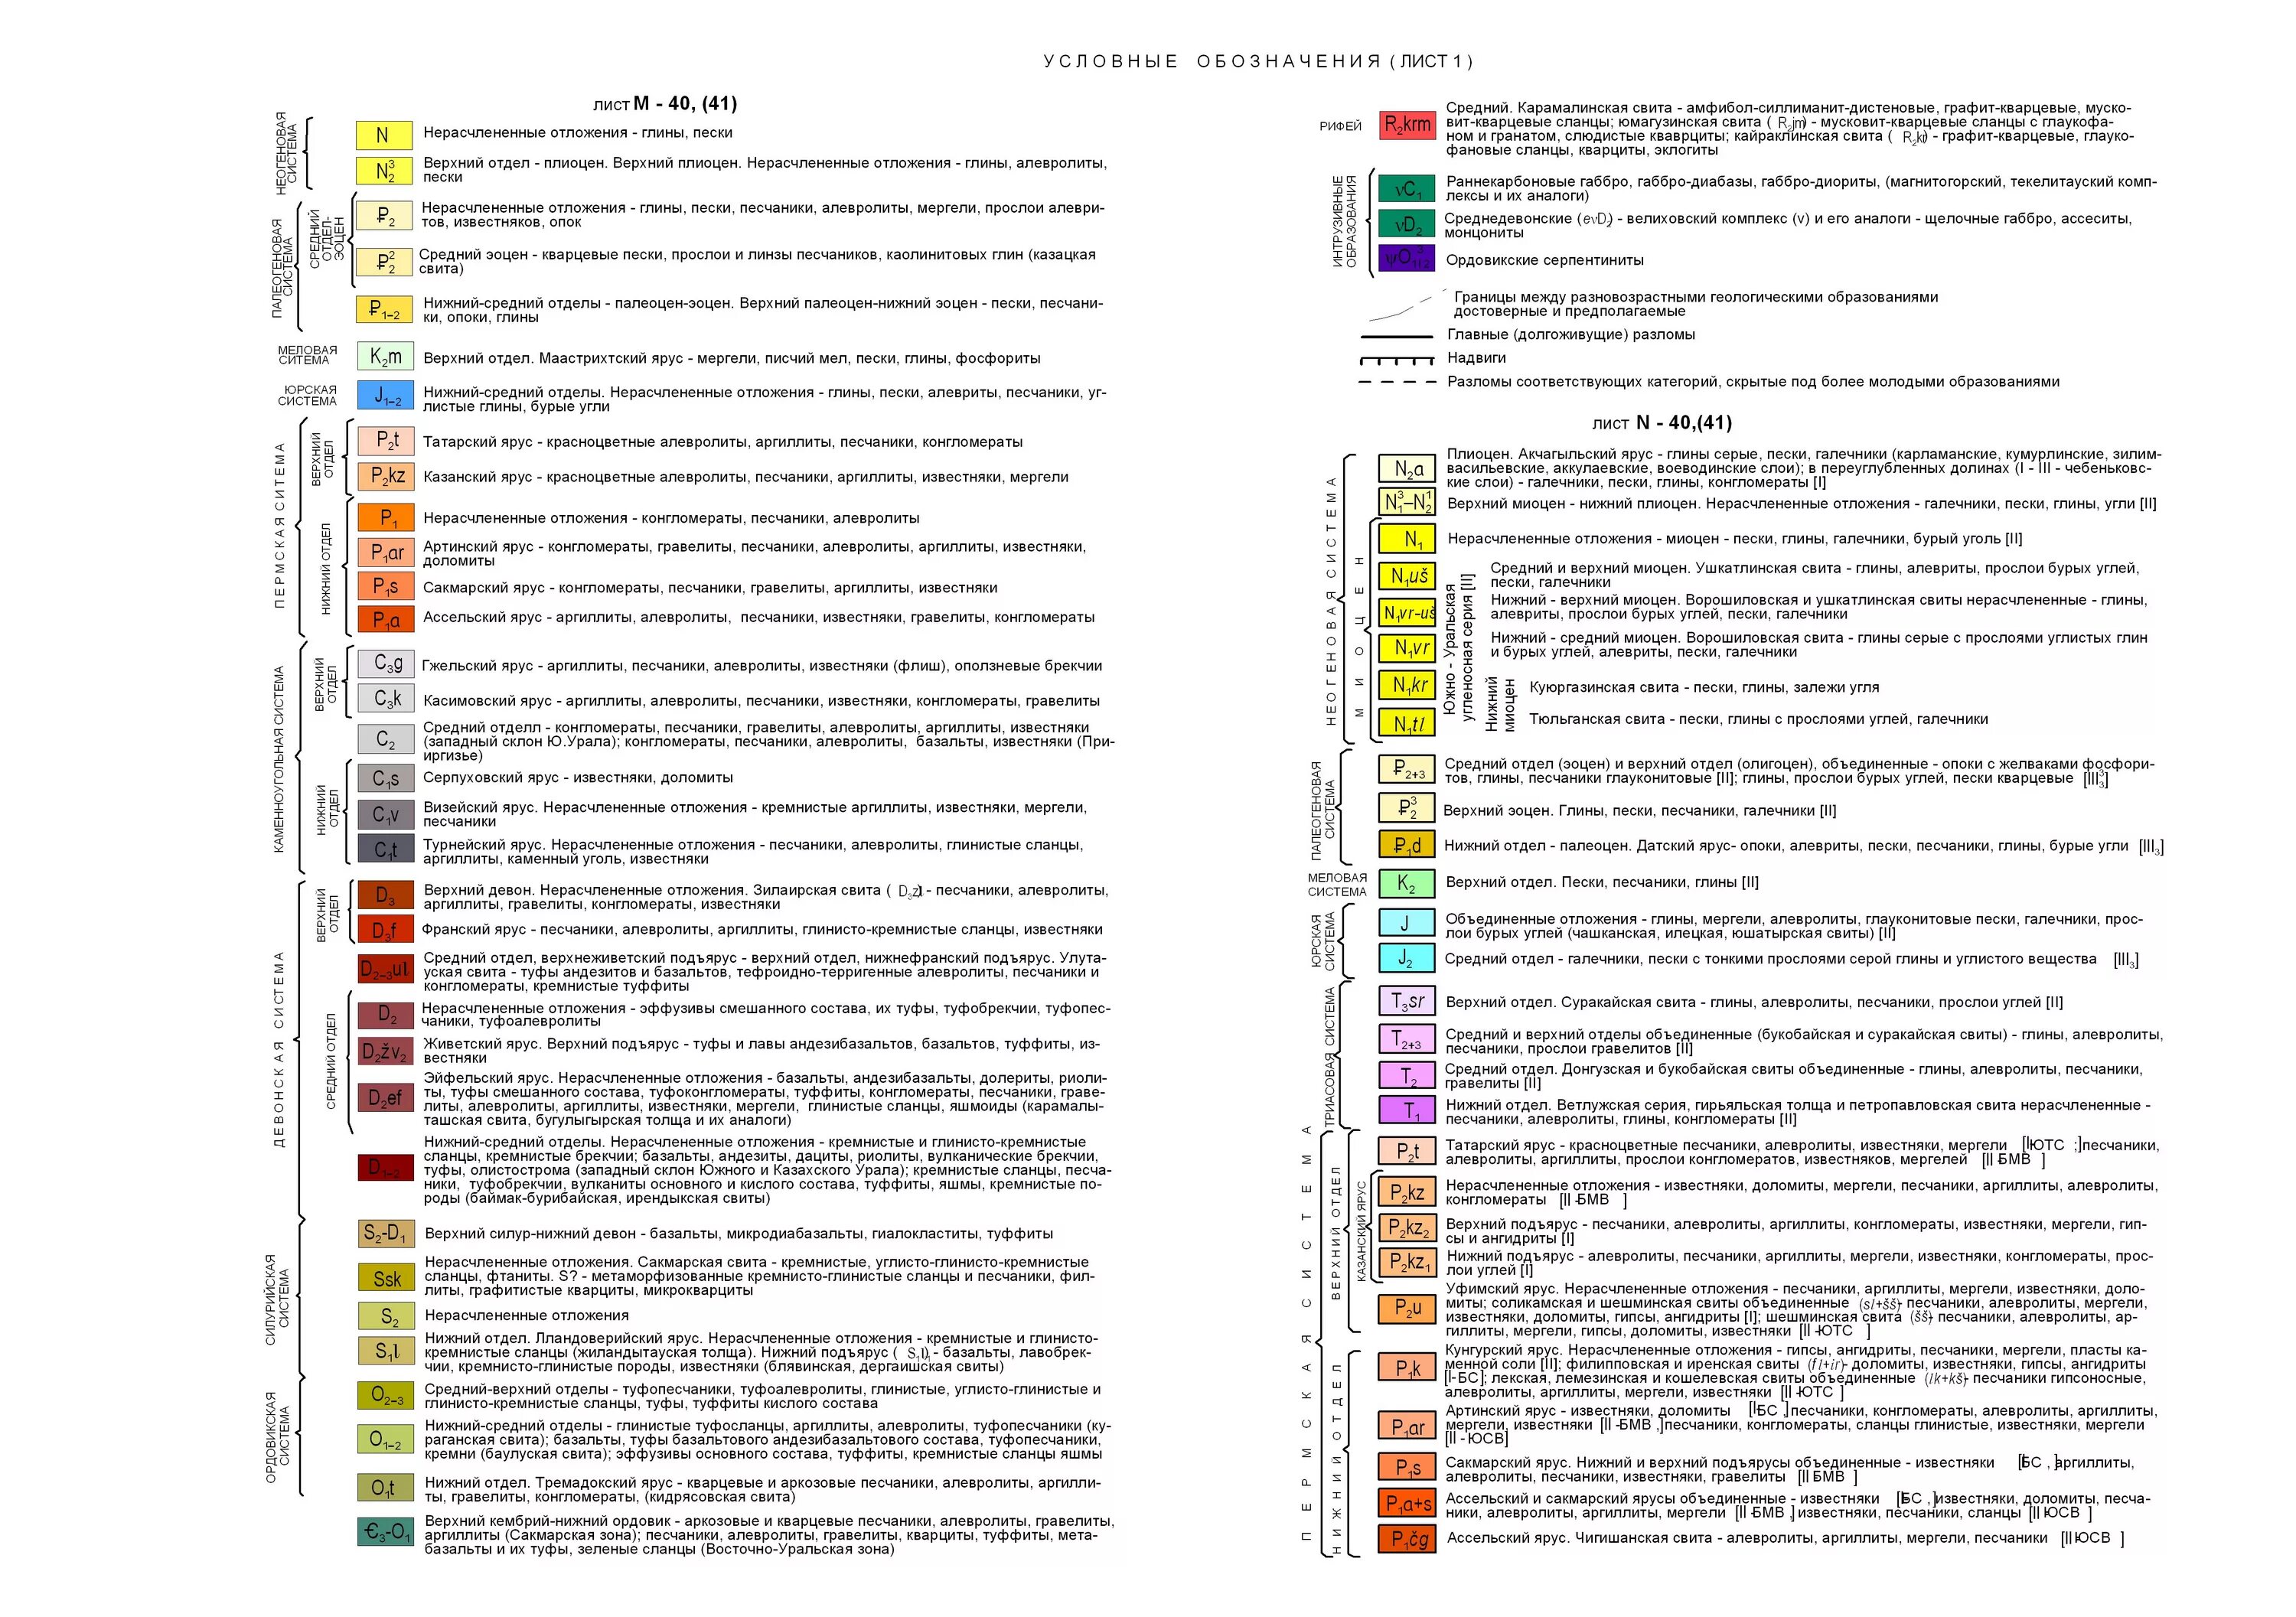 Условные обозначения для геологических карт ВСЕГЕИ. Условные цветовые обозначения на геологических картах. Силурийская система на геологической карте обозначается цветом. Условные обозначения к геолого-геоморфологическим профилям.